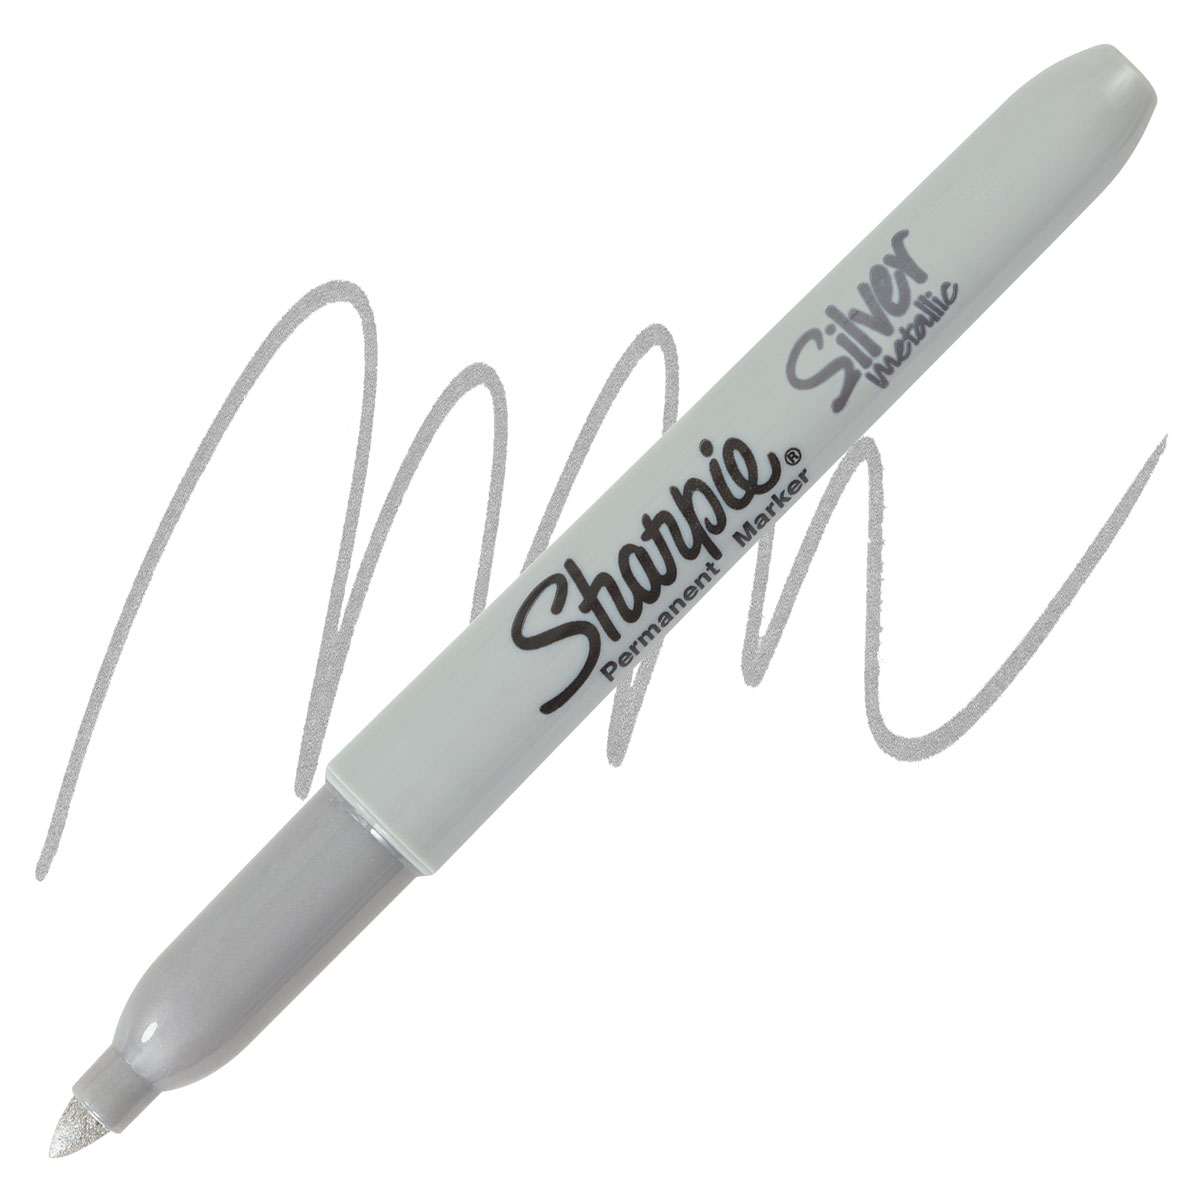 Sharpie Metallic Marker - Silver